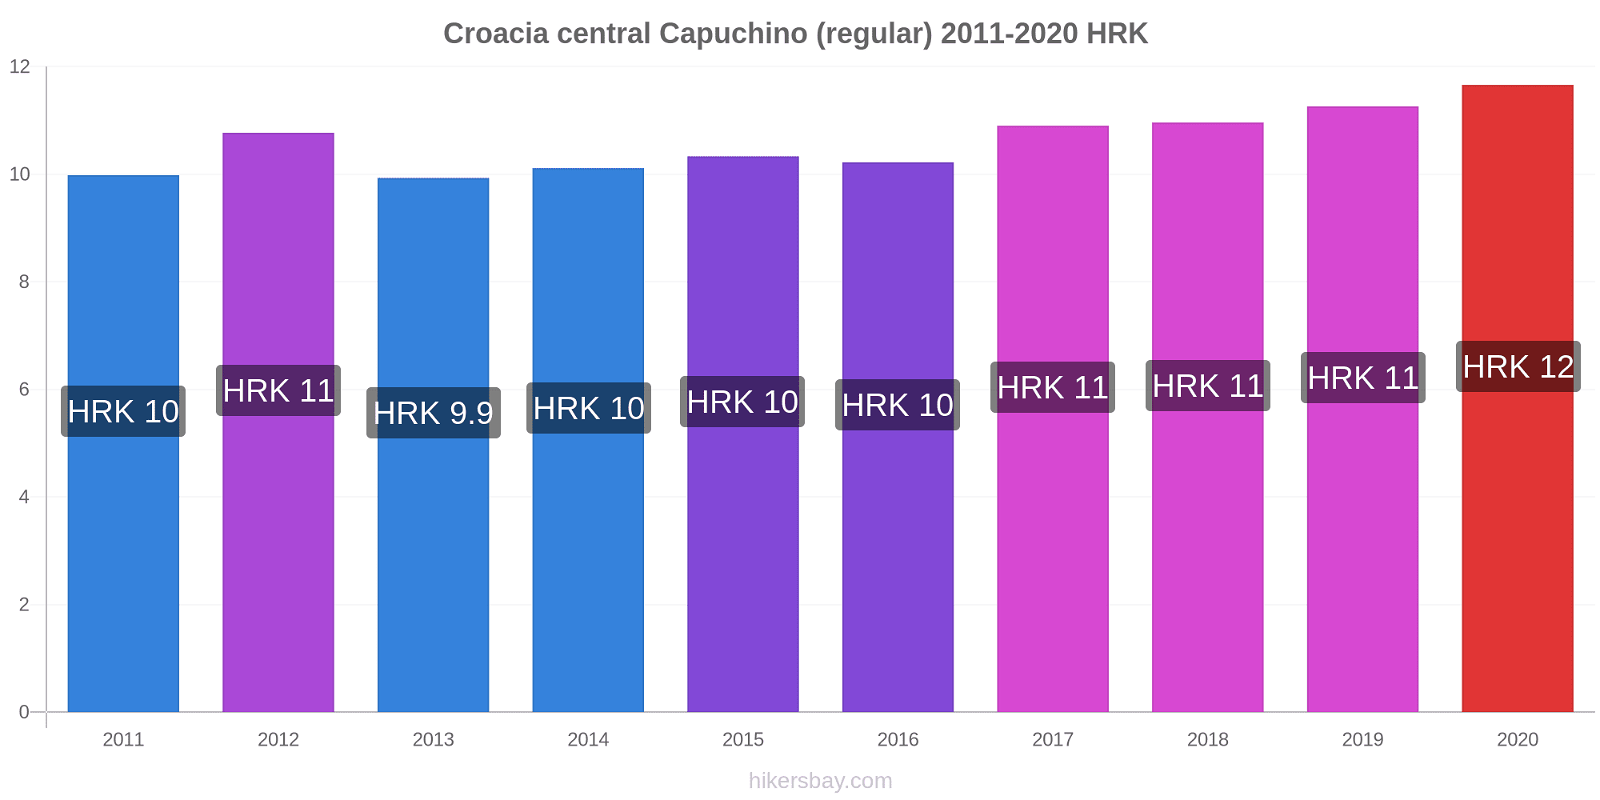 Croacia central cambios de precios Capuchino (regular) hikersbay.com